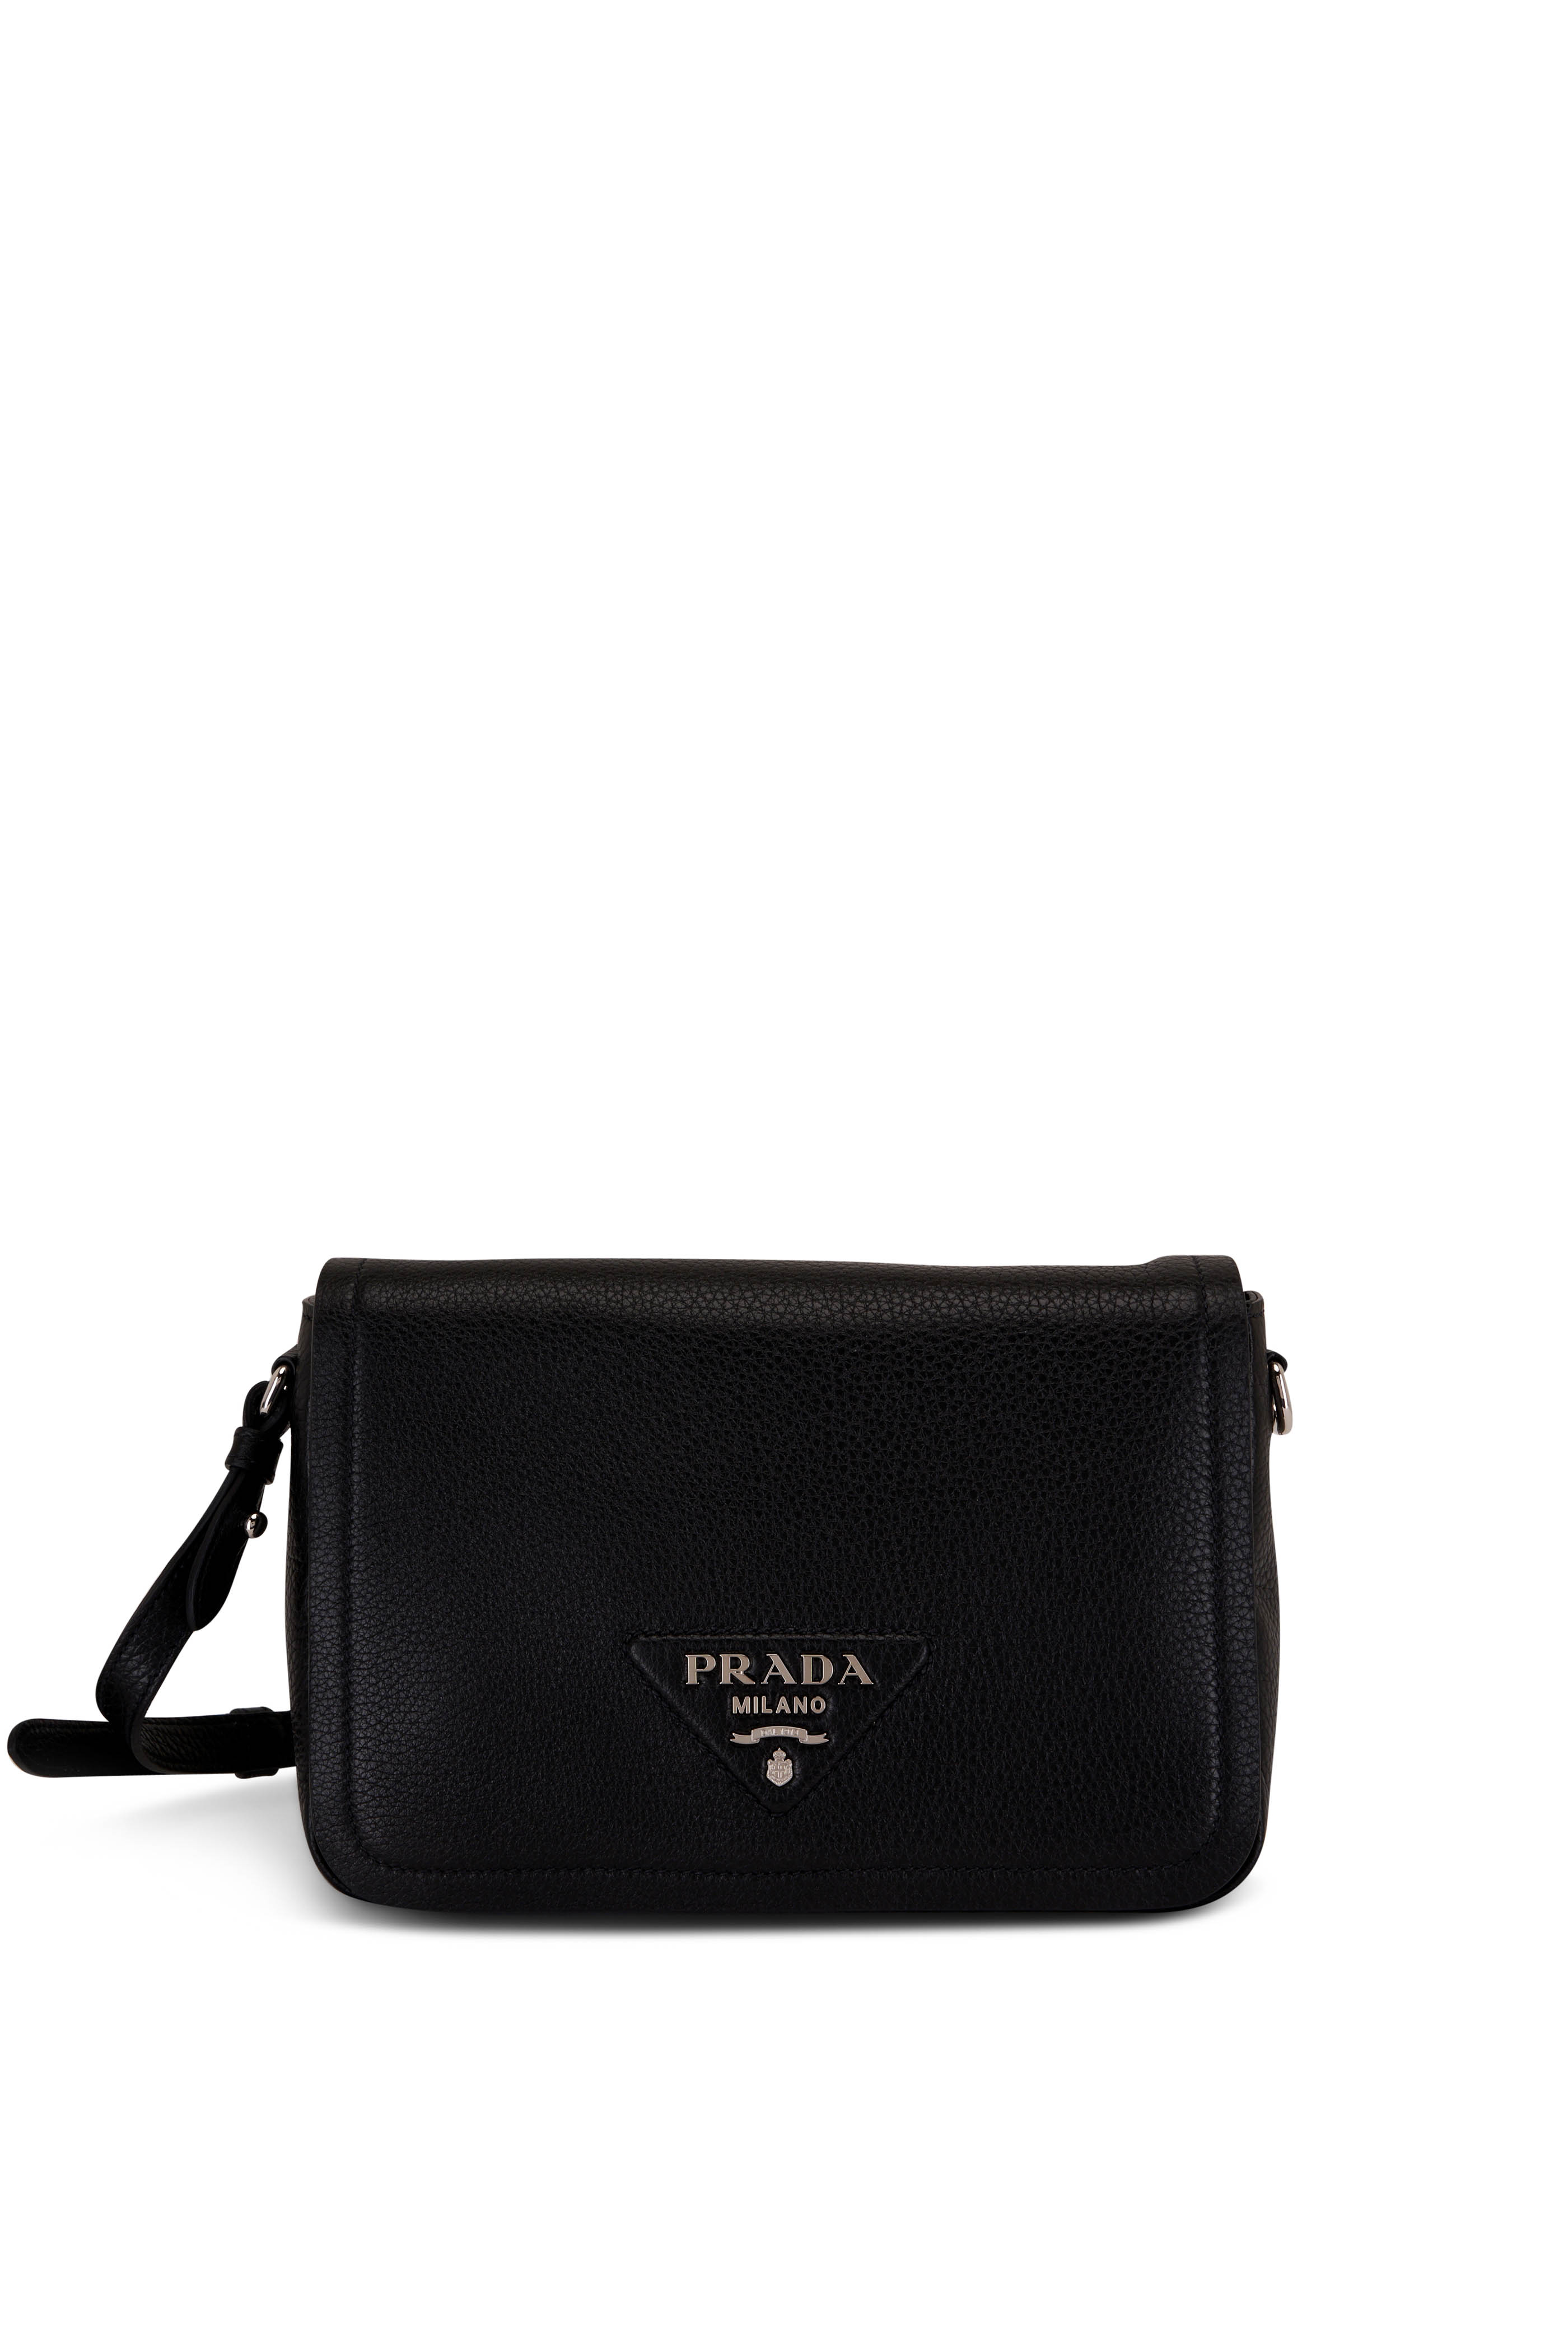 Prada Nylon Handbag 395914